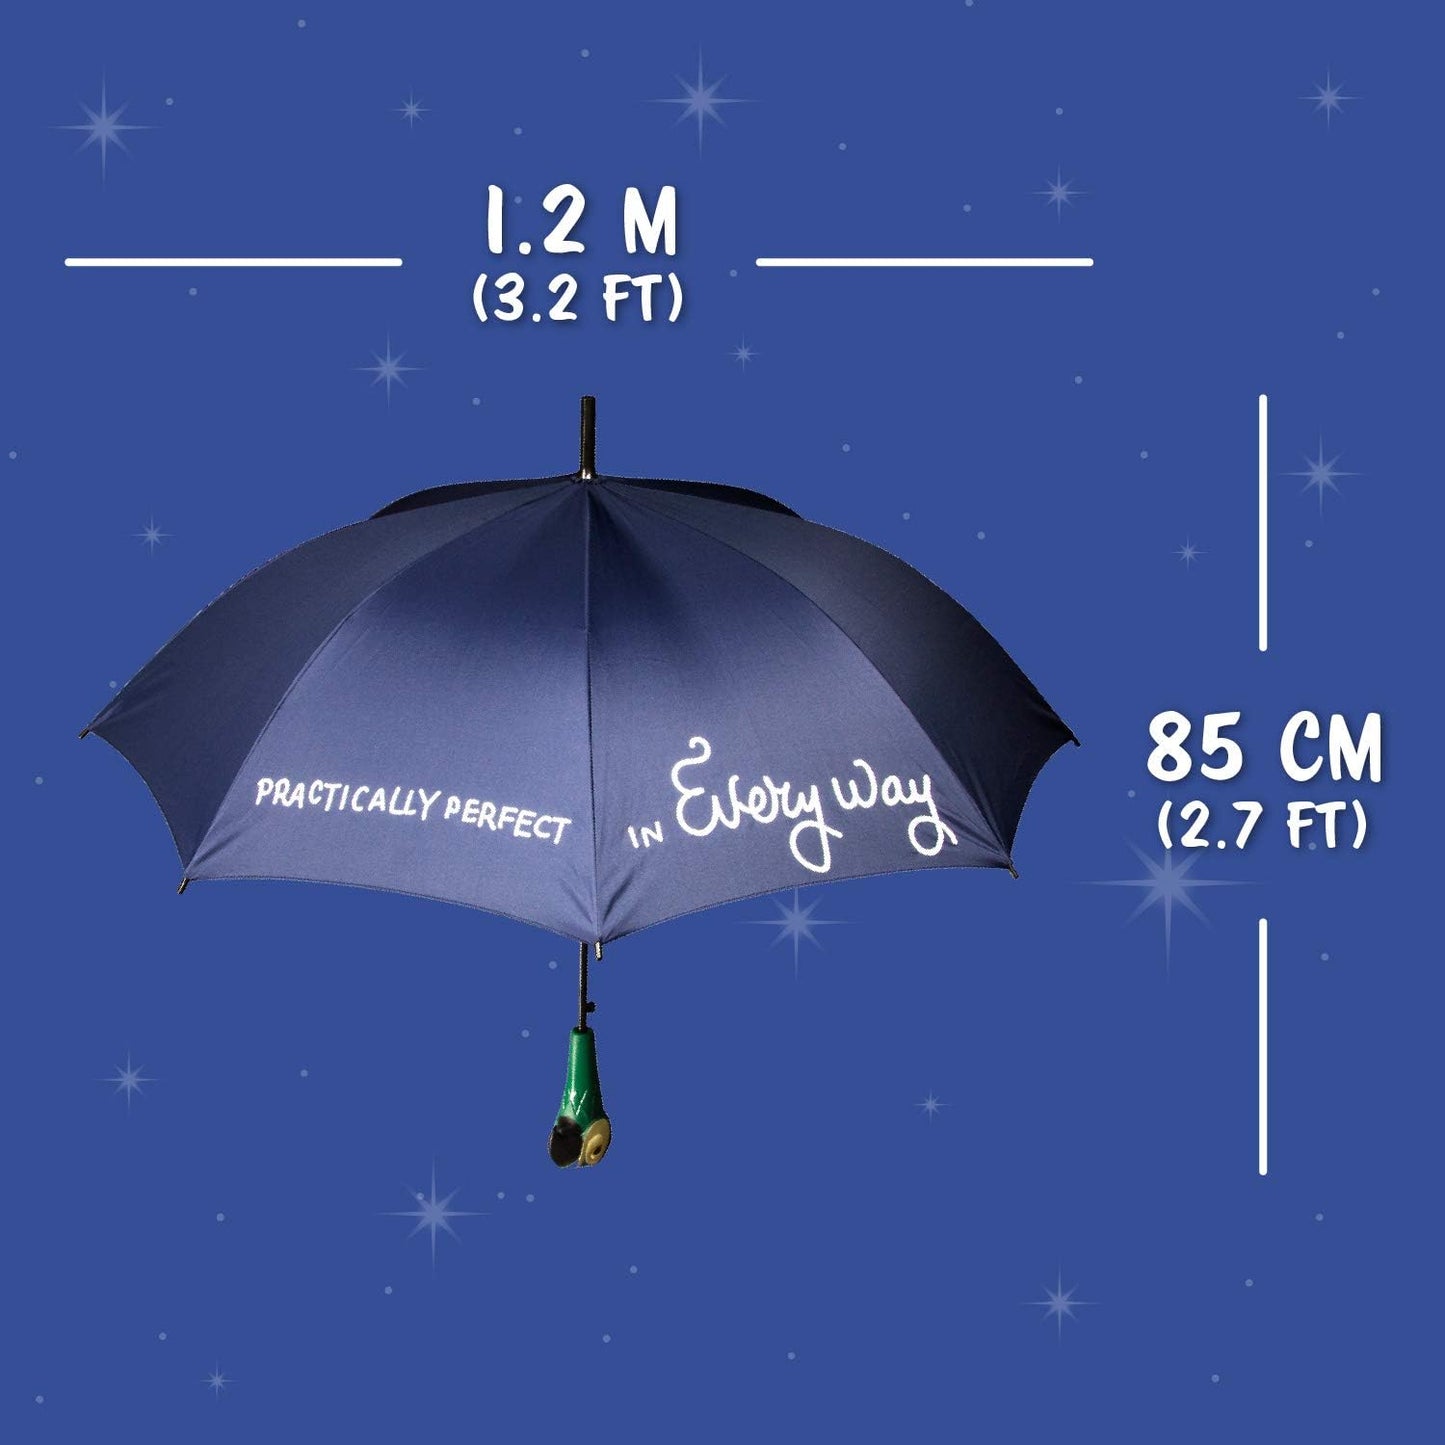 Mary Poppins Umbrella